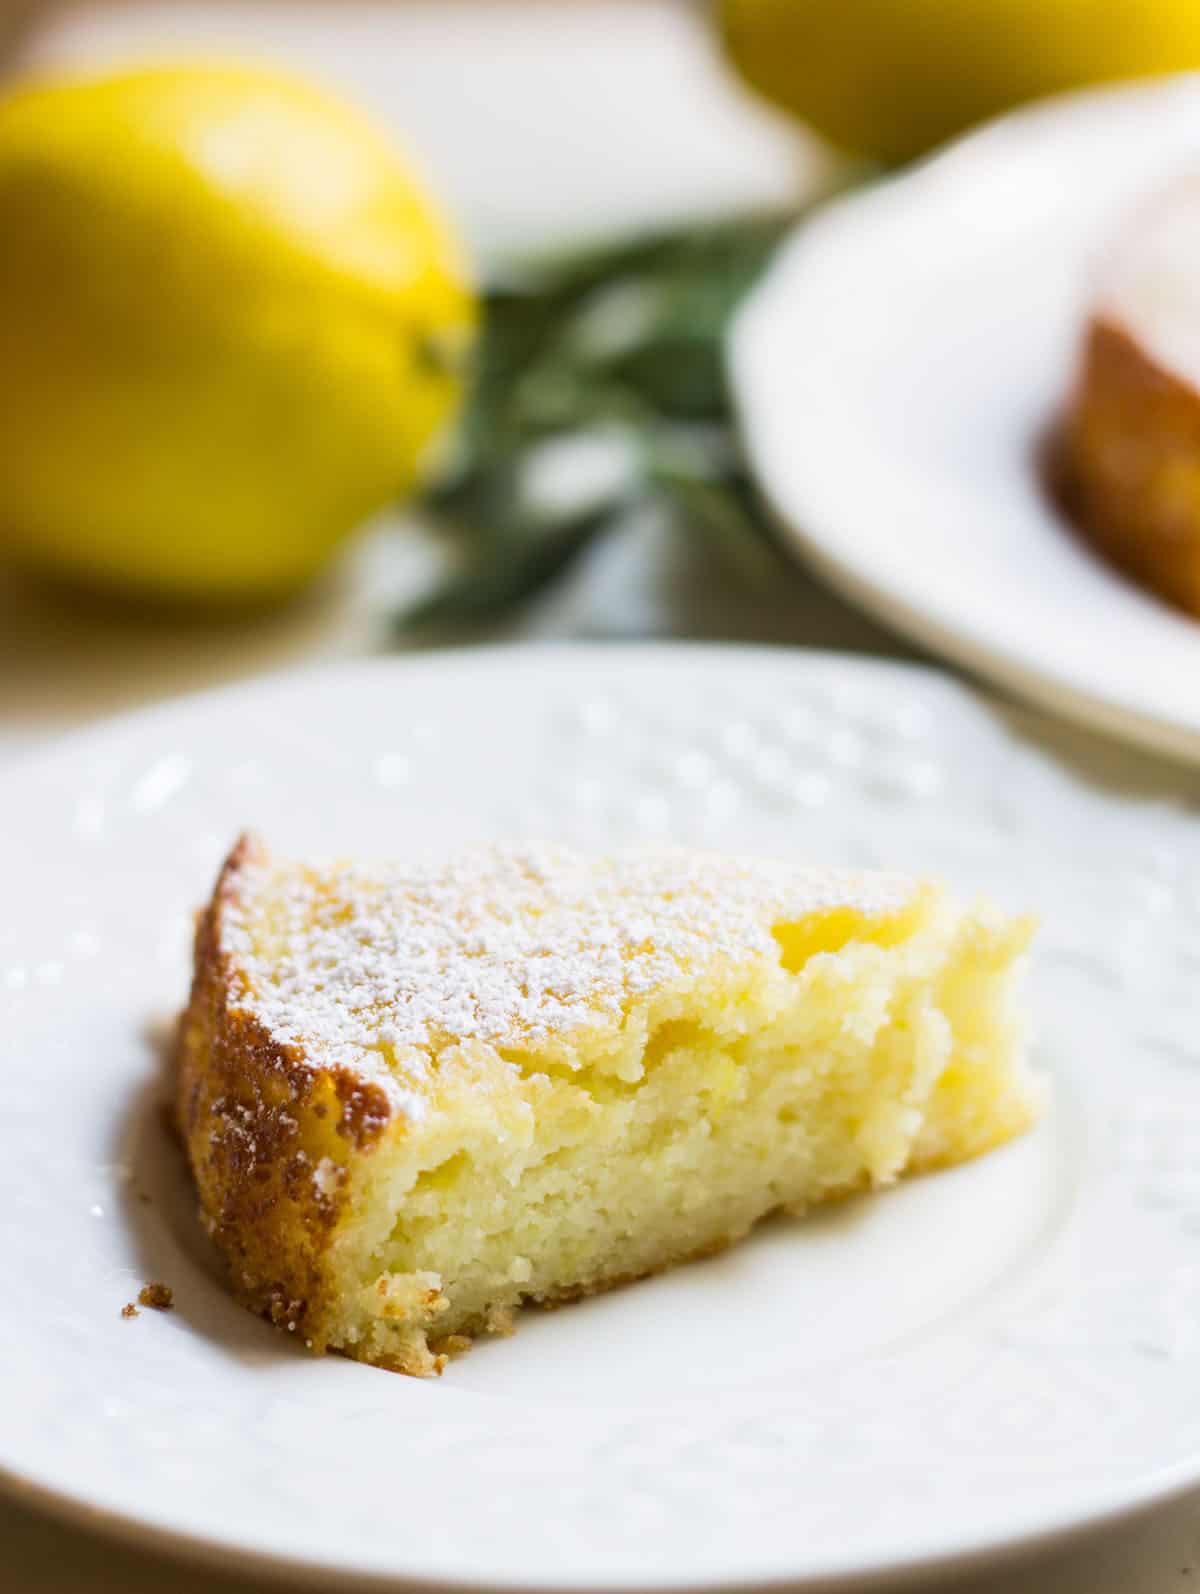 Lemon ricotta cake close up slice image on plate